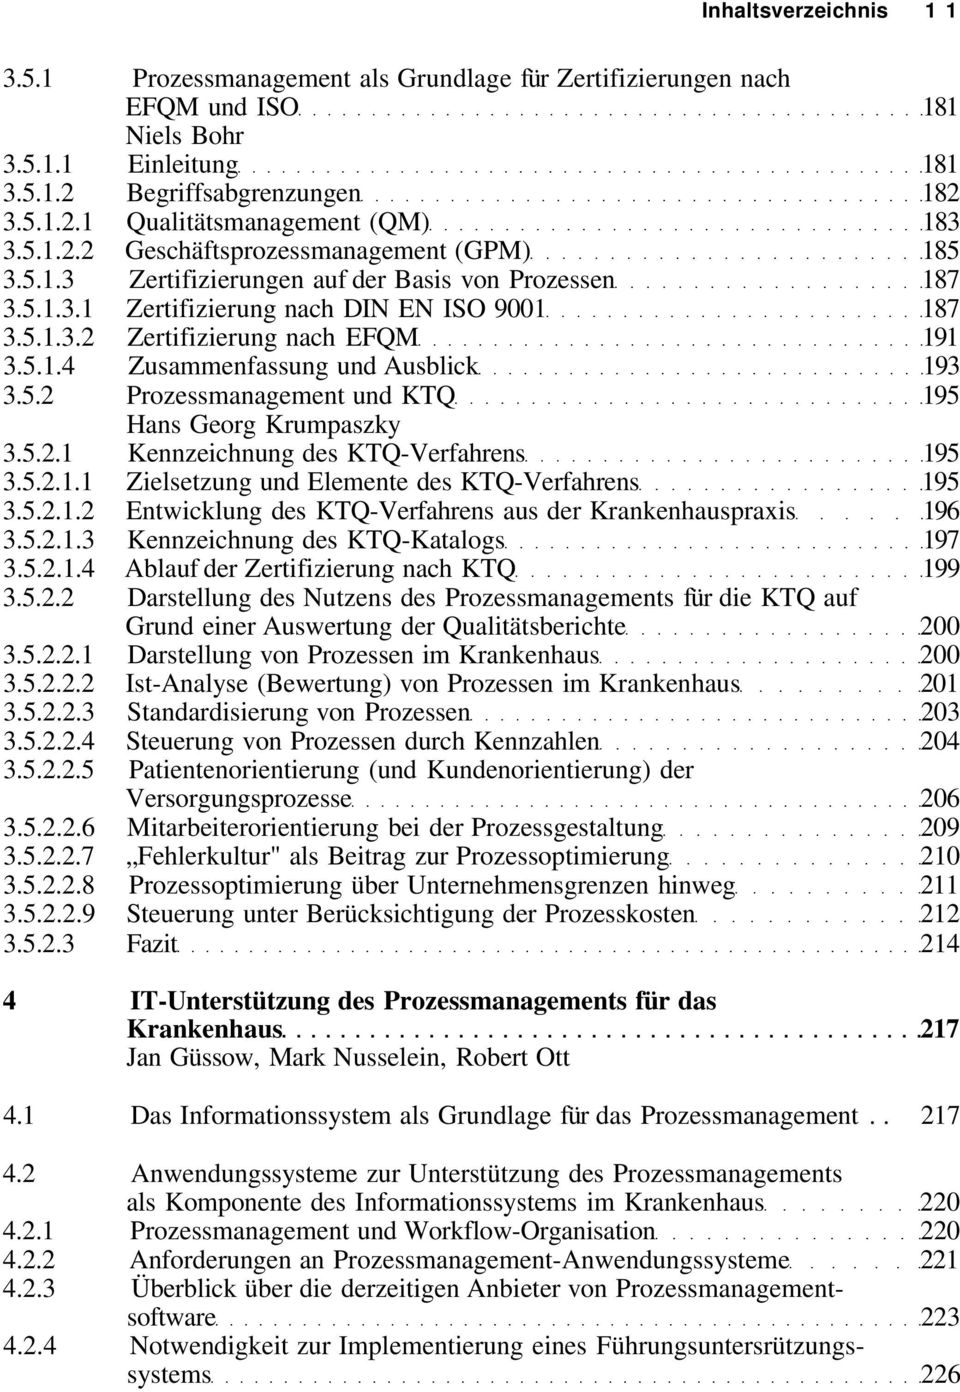 5.2 Prozessmanagement und KTQ 195 Hans Georg Krumpaszky 3.5.2.1 Kennzeichnung des KTQ-Verfahrens 195 3.5.2.1.1 Zielsetzung und Elemente des KTQ-Verfahrens 195 3.5.2.1.2 Entwicklung des KTQ-Verfahrens aus der Krankenhauspraxis 196 3.